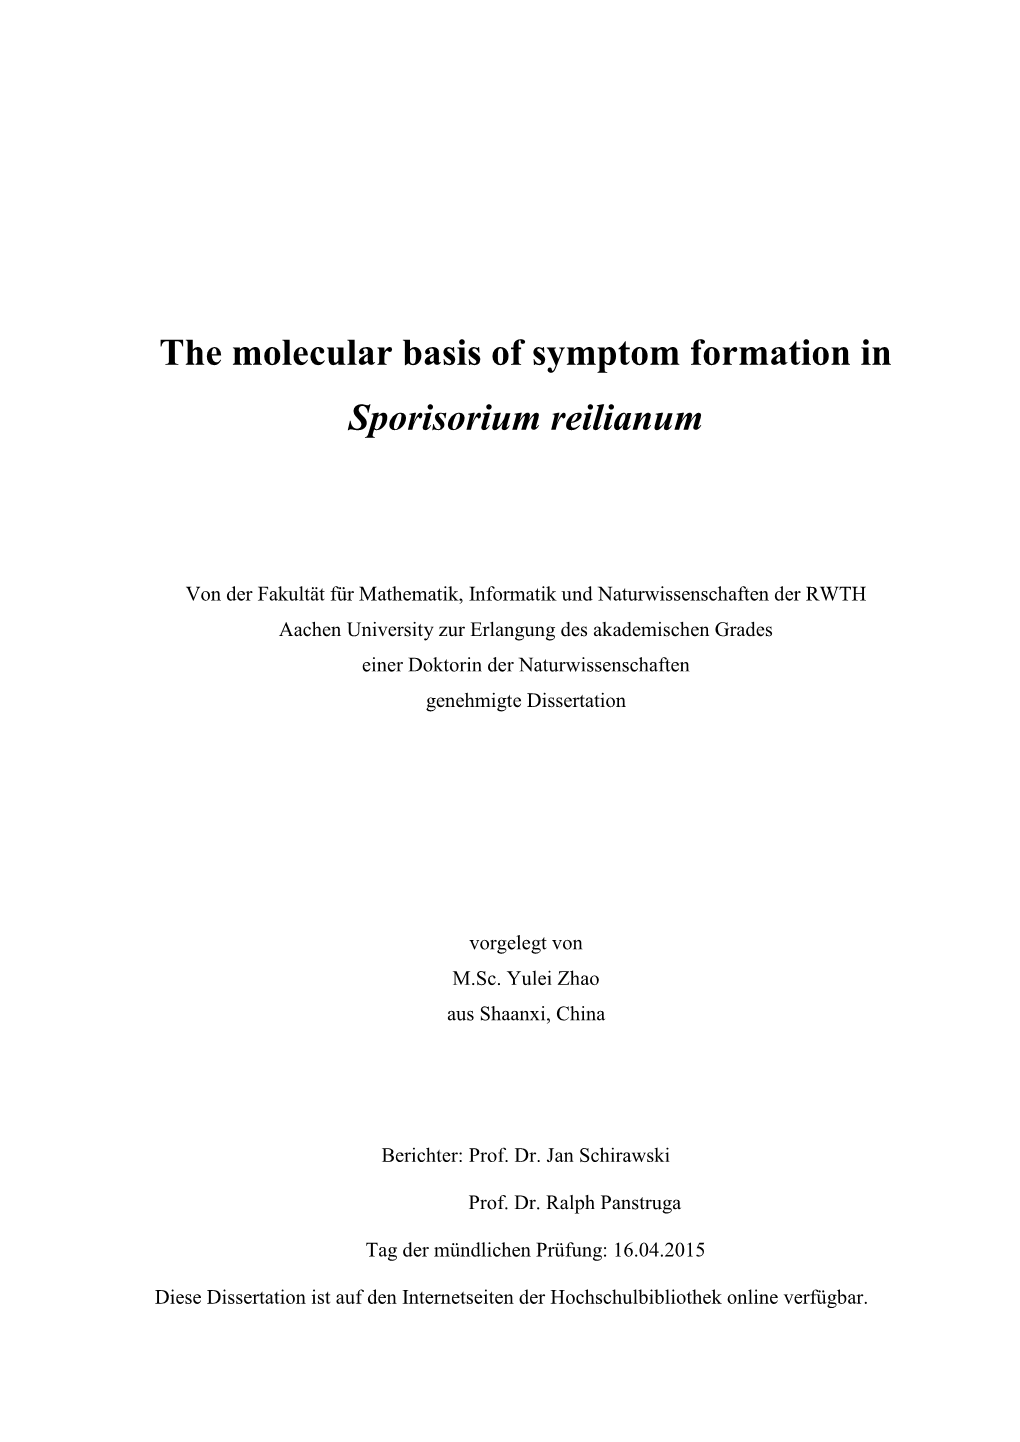 The Molecular Basis of Symptom Formation in Sporisorium Reilianum